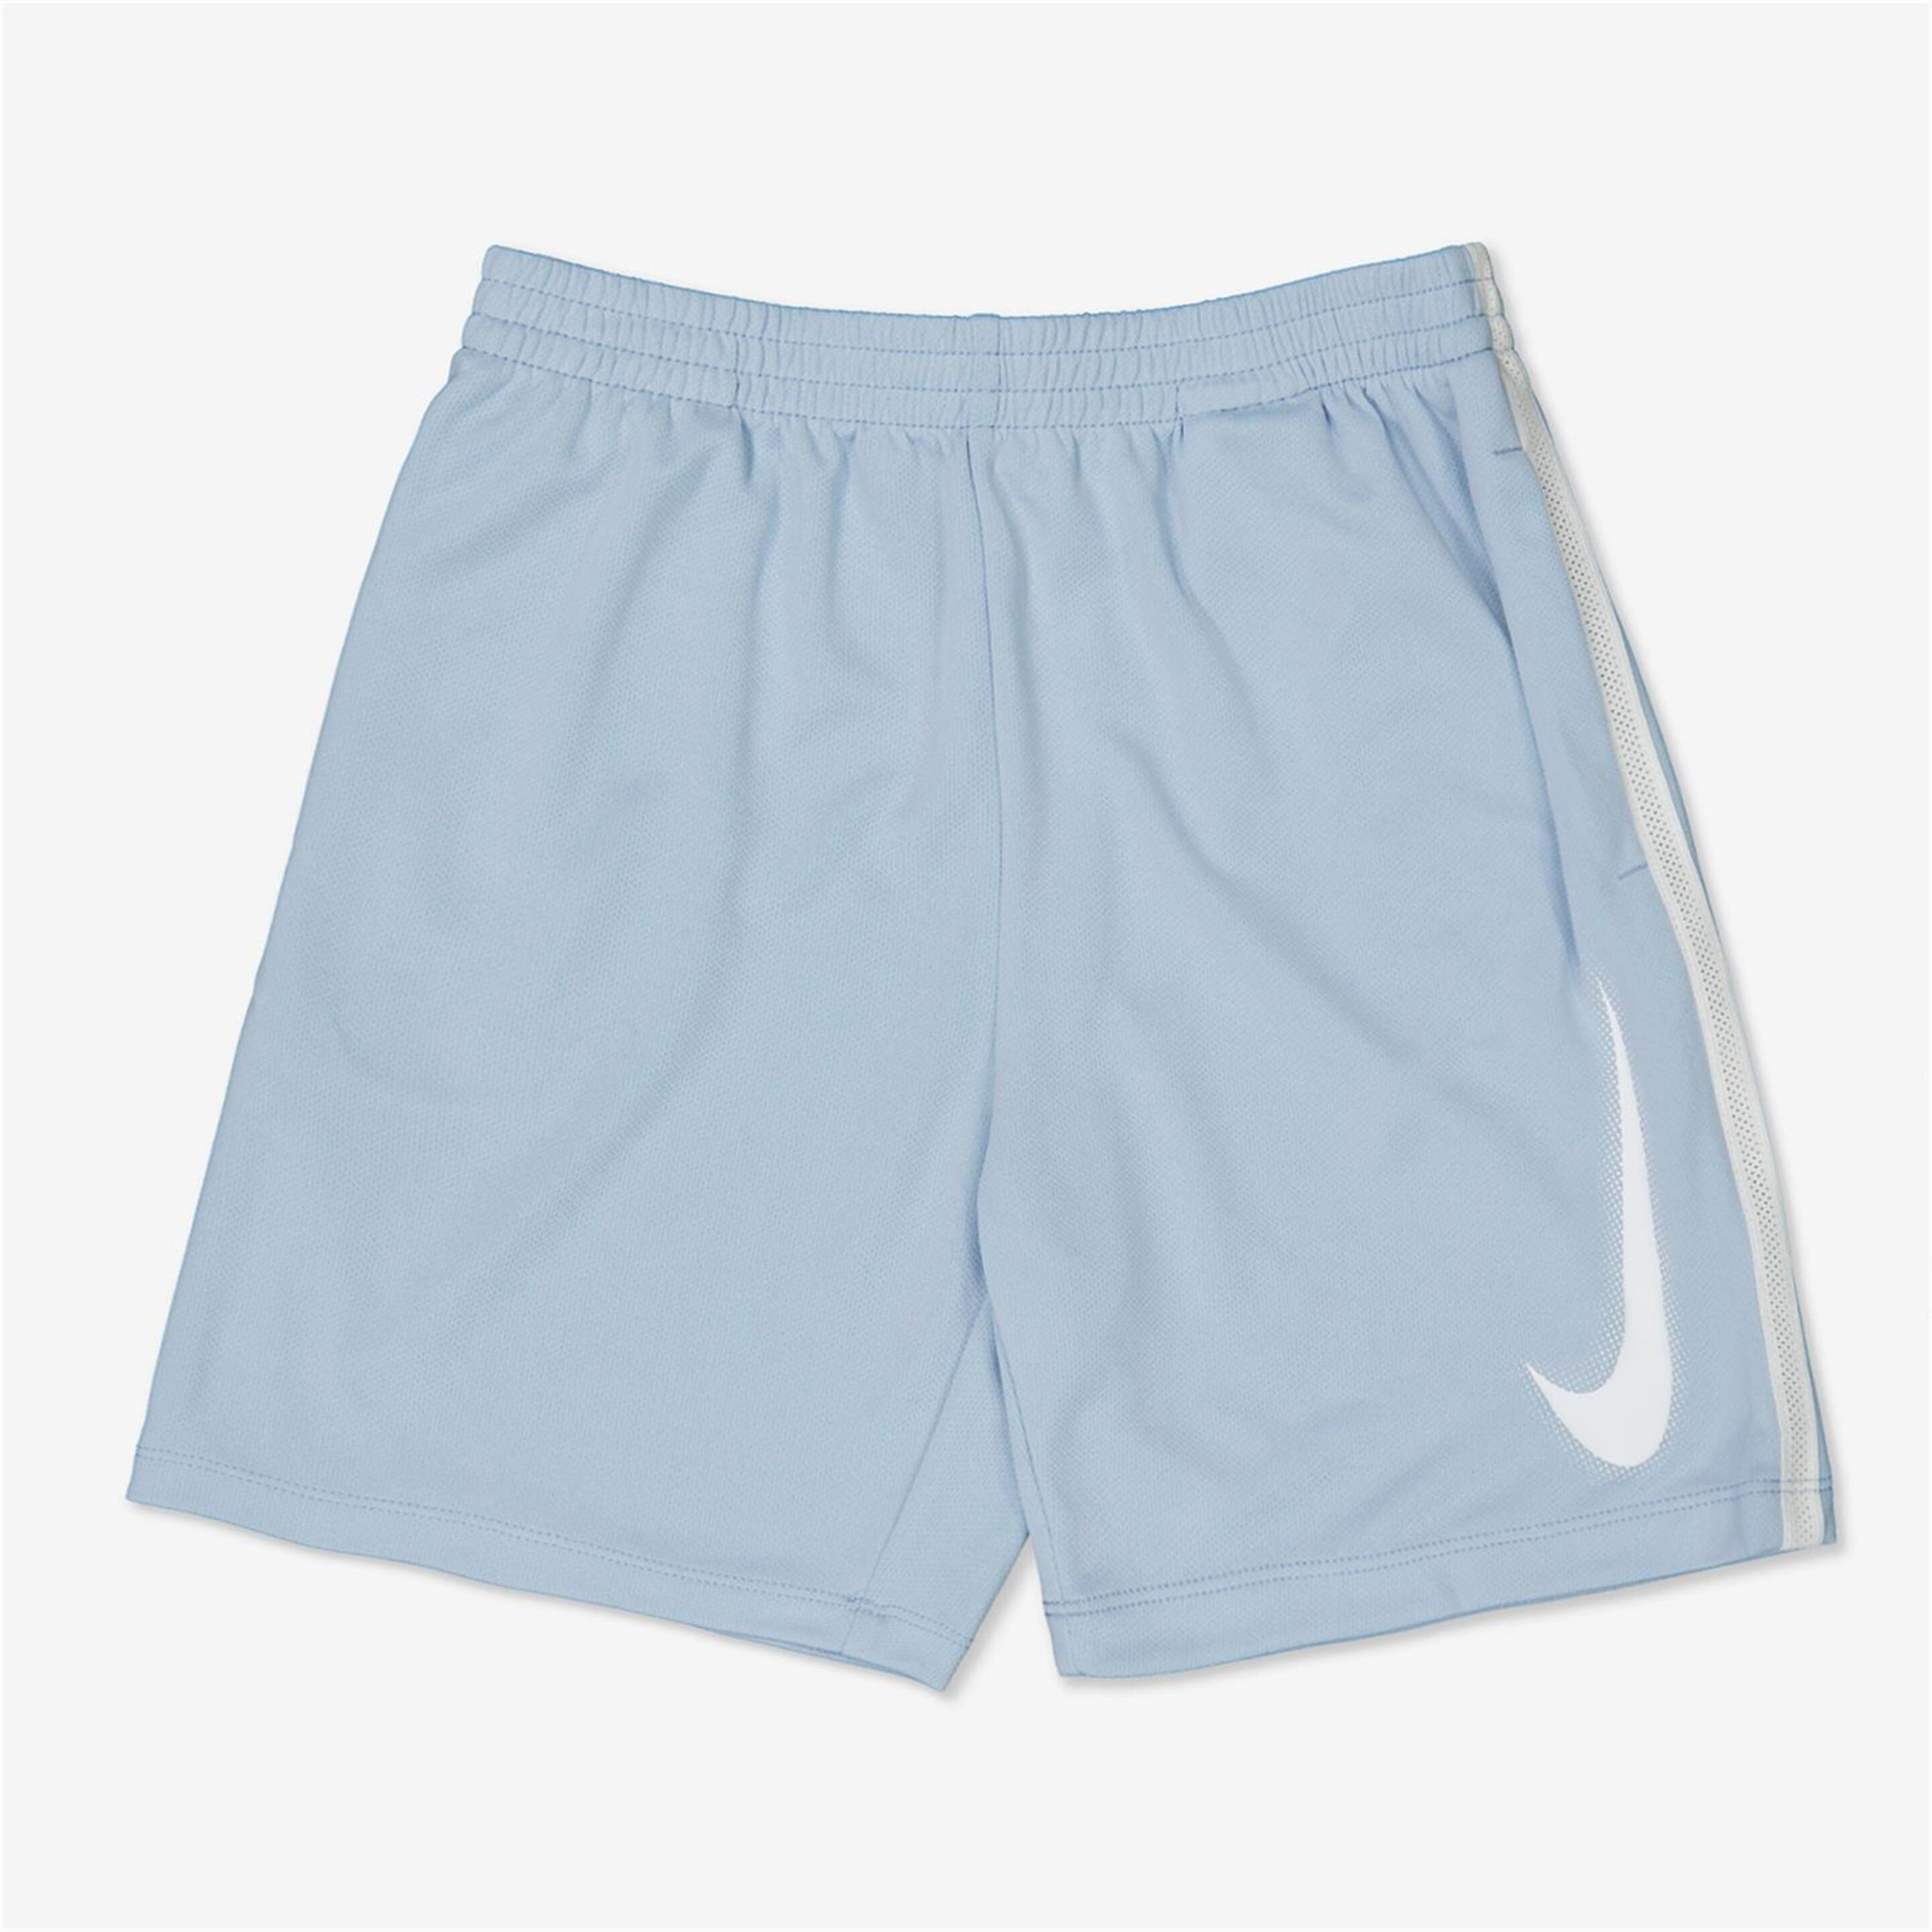 Pantalón Nike - azul - Pantalón Corto Niño